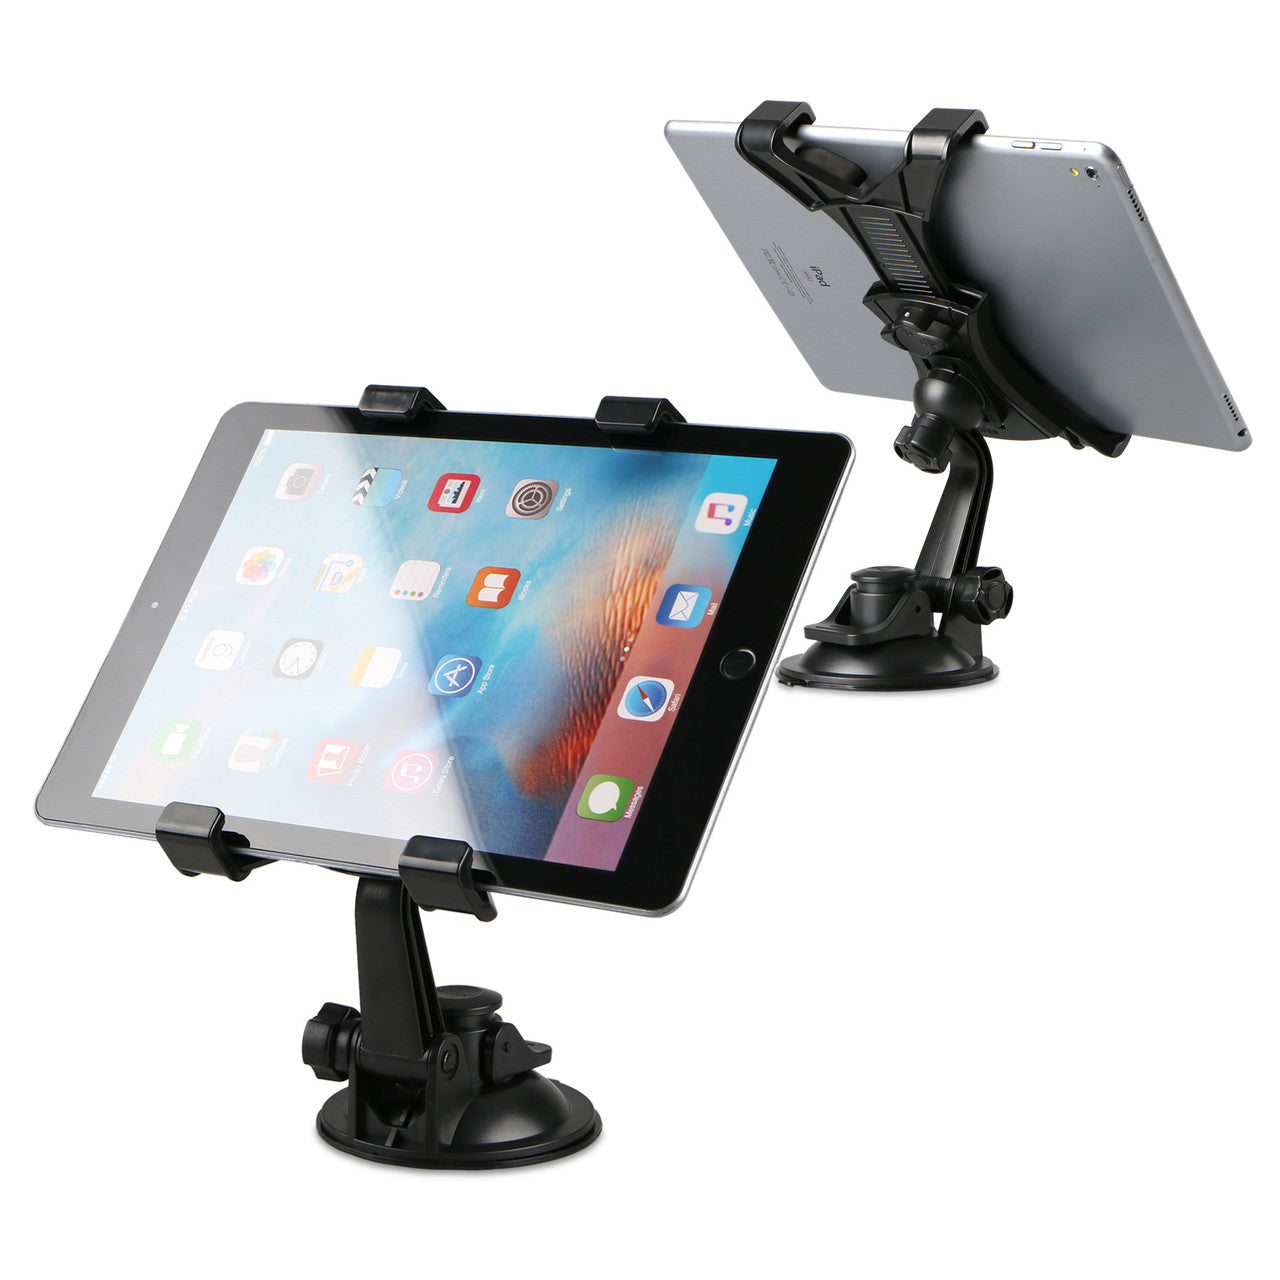 360掳 Rotation Car Mount Windshield Desk Dashboard for iPad Pro 9.7 iPad Mini 4/3/2/1 Samsung Galaxy Tab E 9.6/8.0 A 7.0/8.0/9.7 and All 7-10 inch Tablets